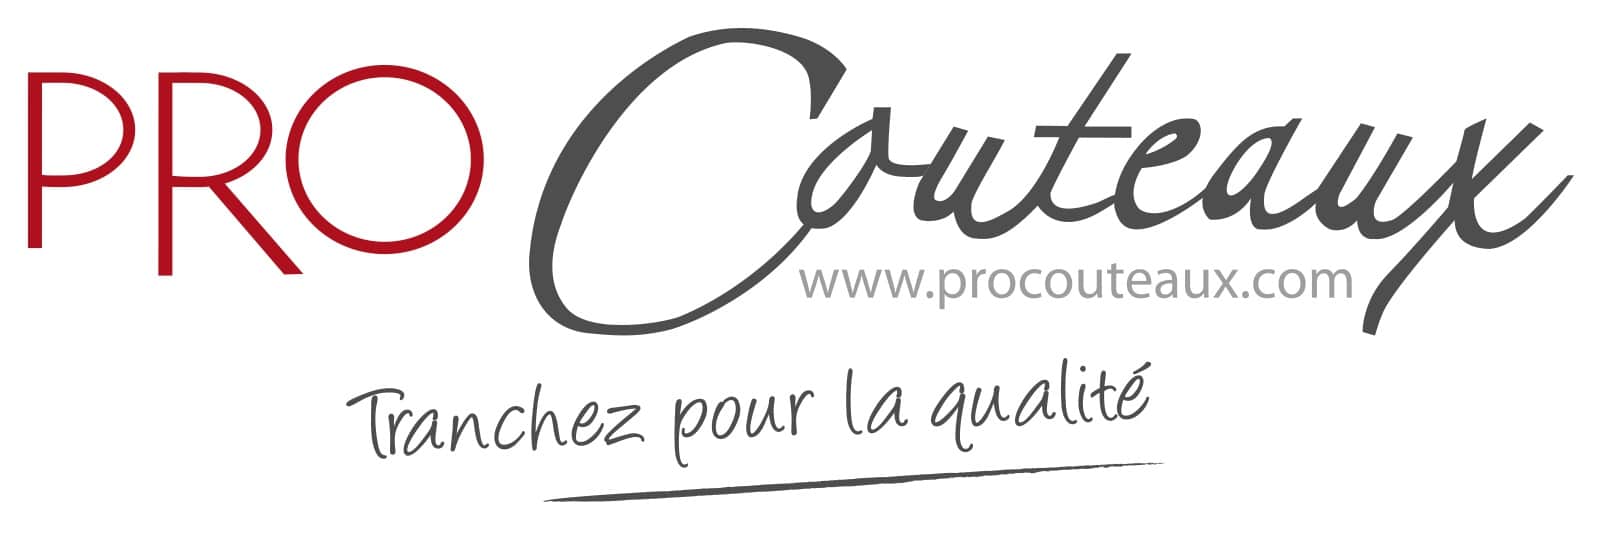 Procouteaux Logo